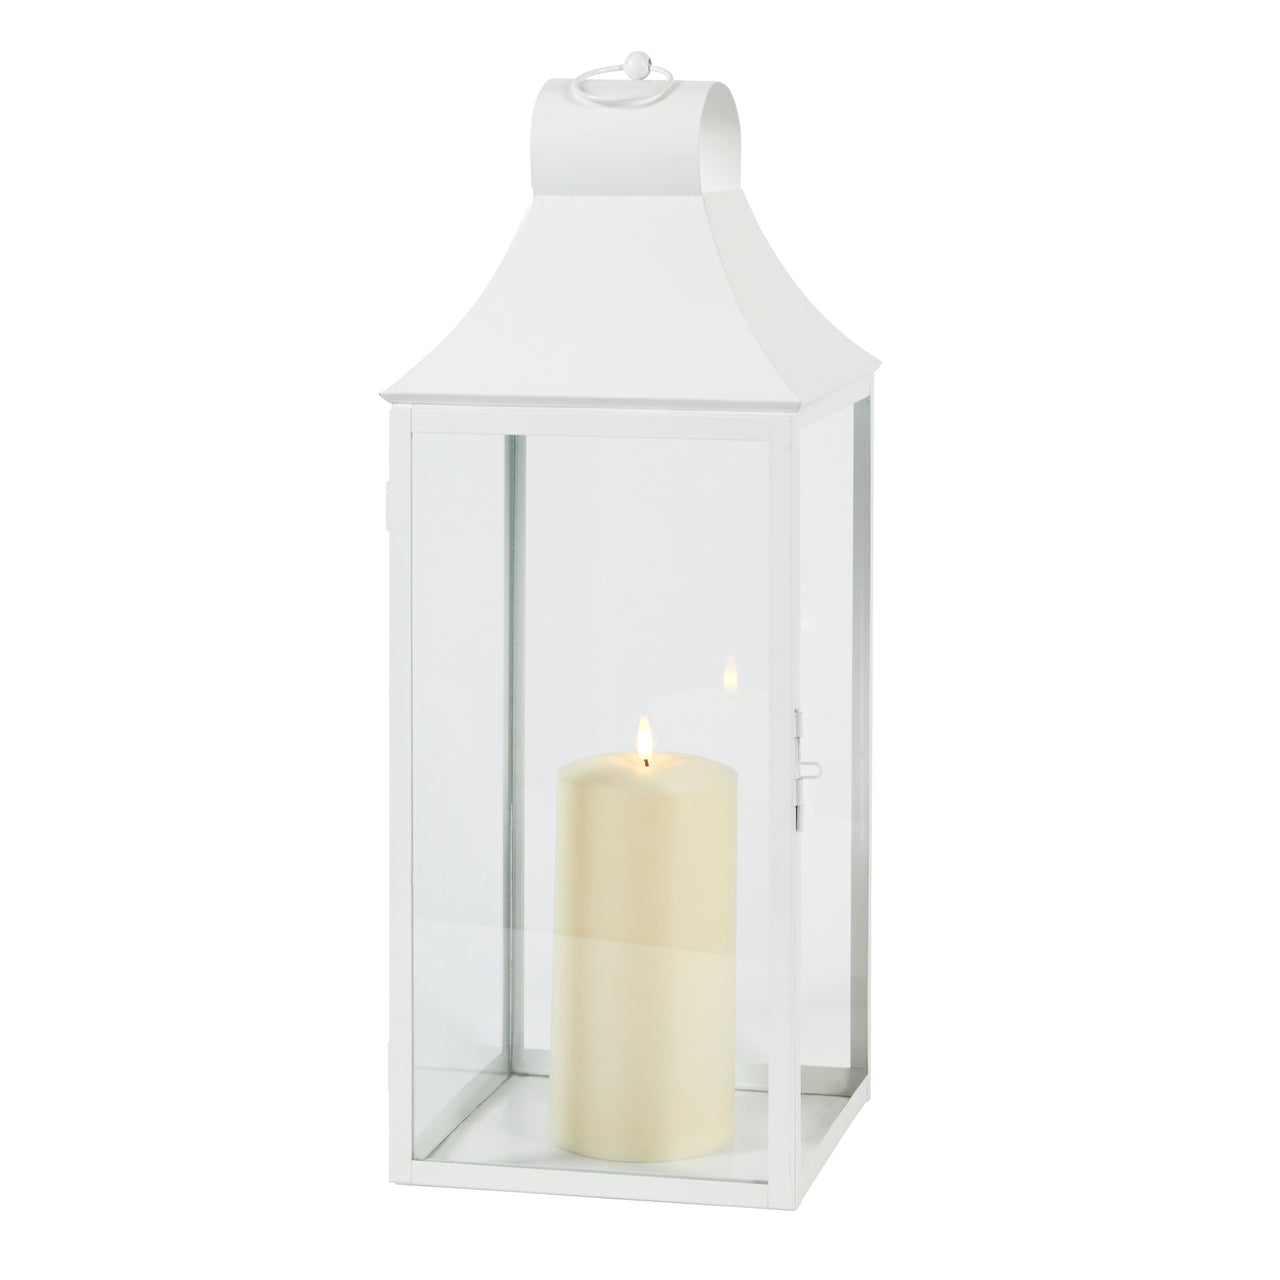 59cm Albury White Garden Lantern with TruGlow® Candle